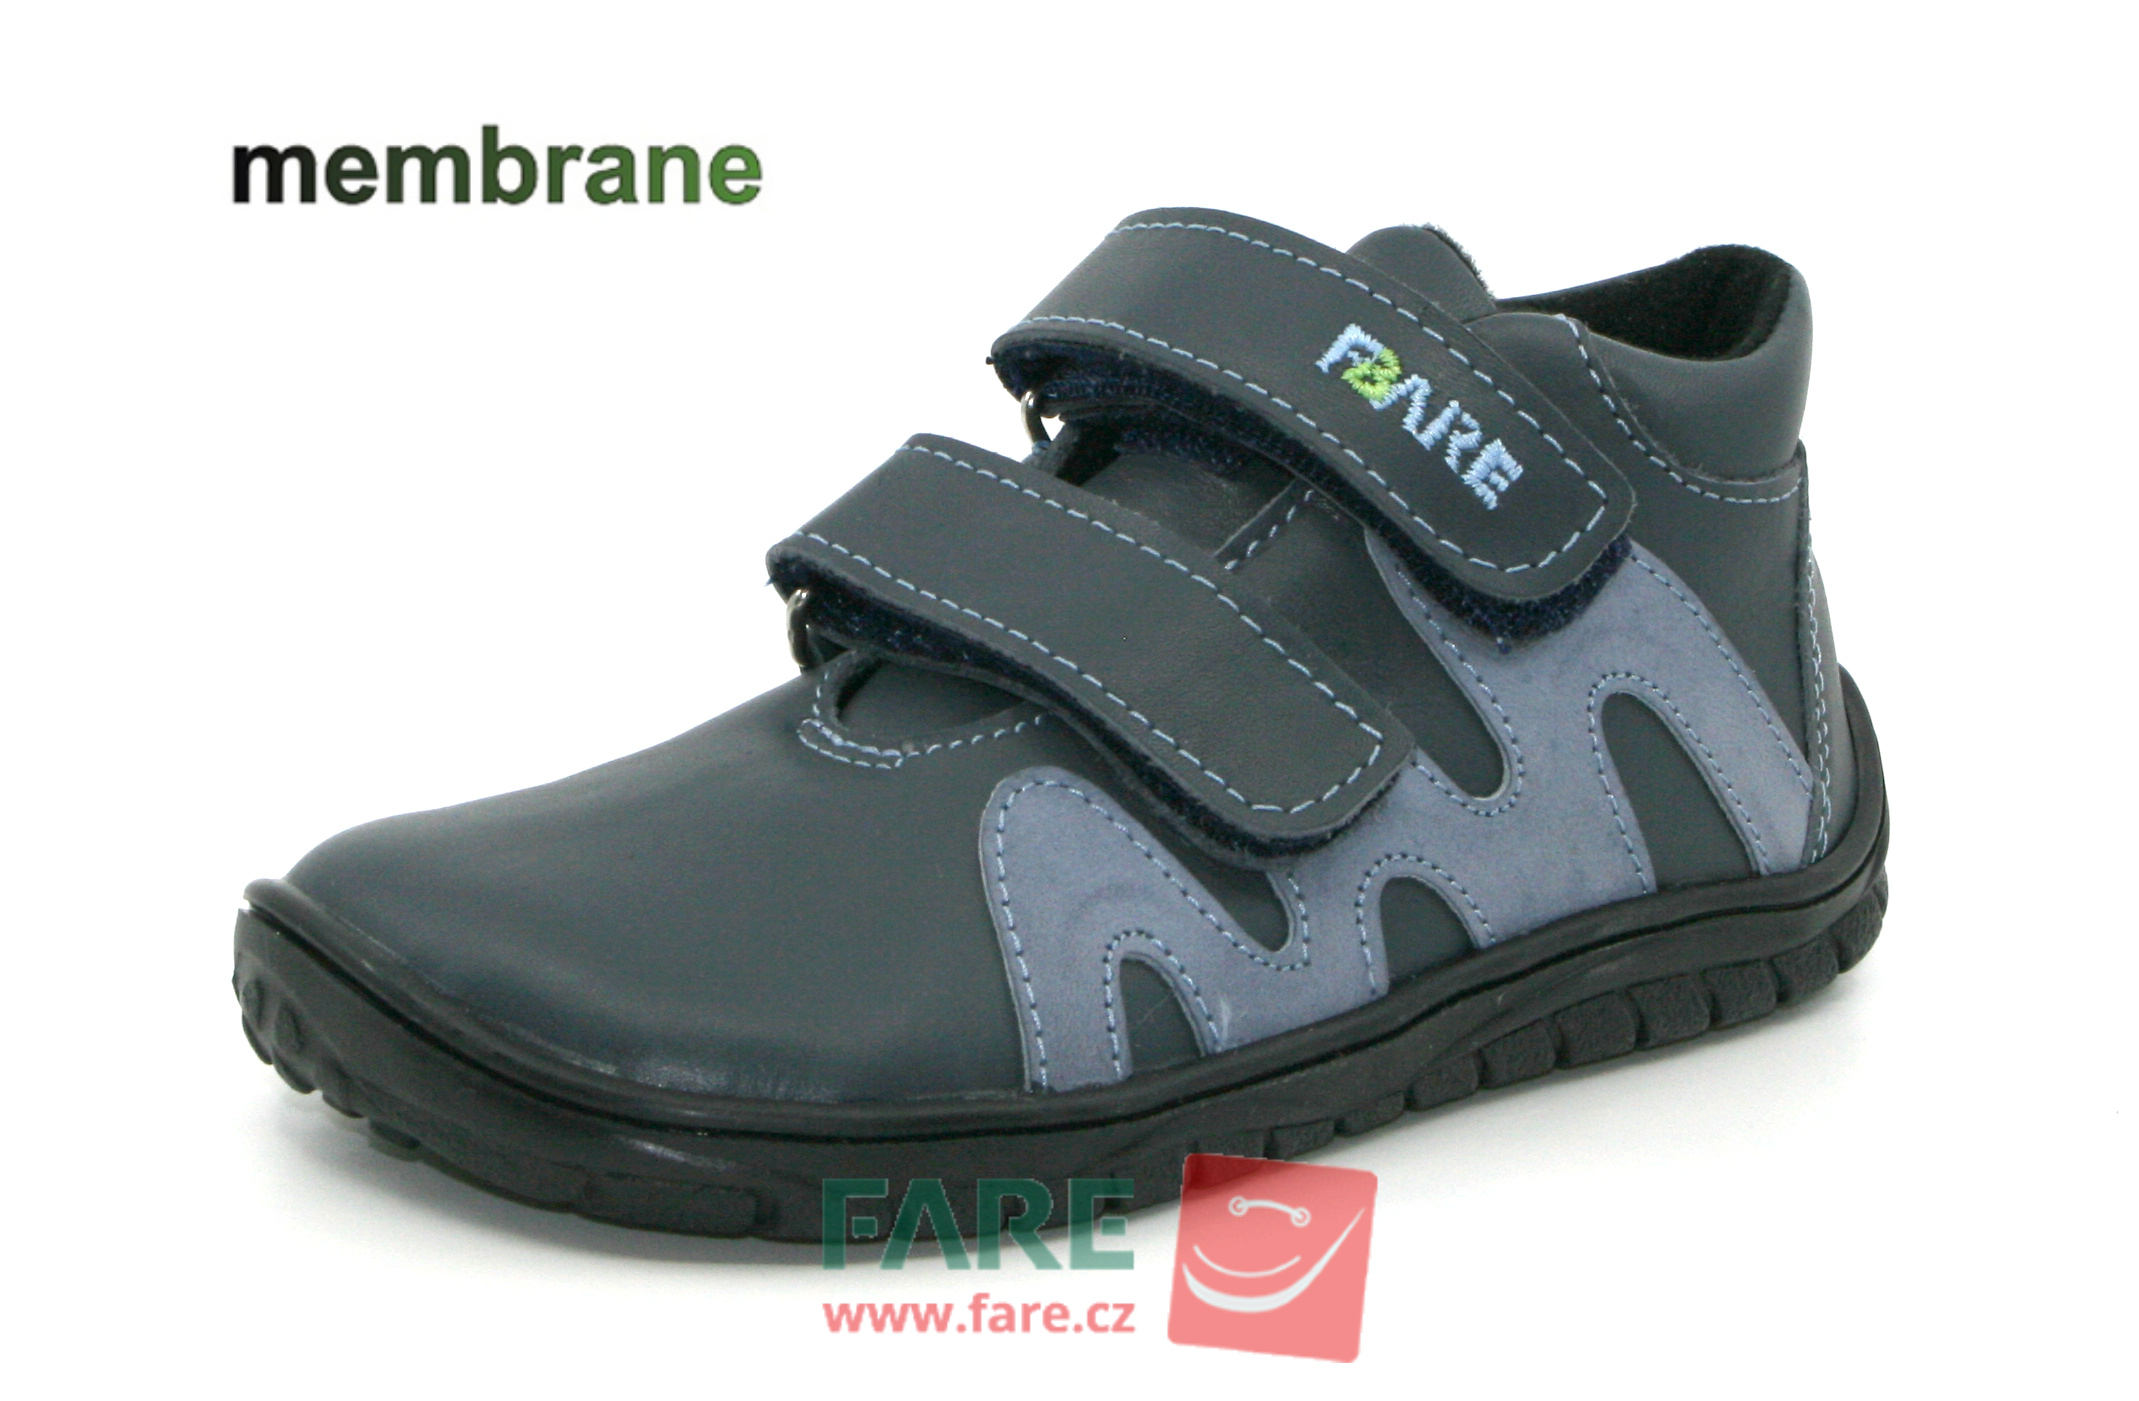 FARE BARE celoroční boty s membránou B5516161 Velikost obuvi: 29